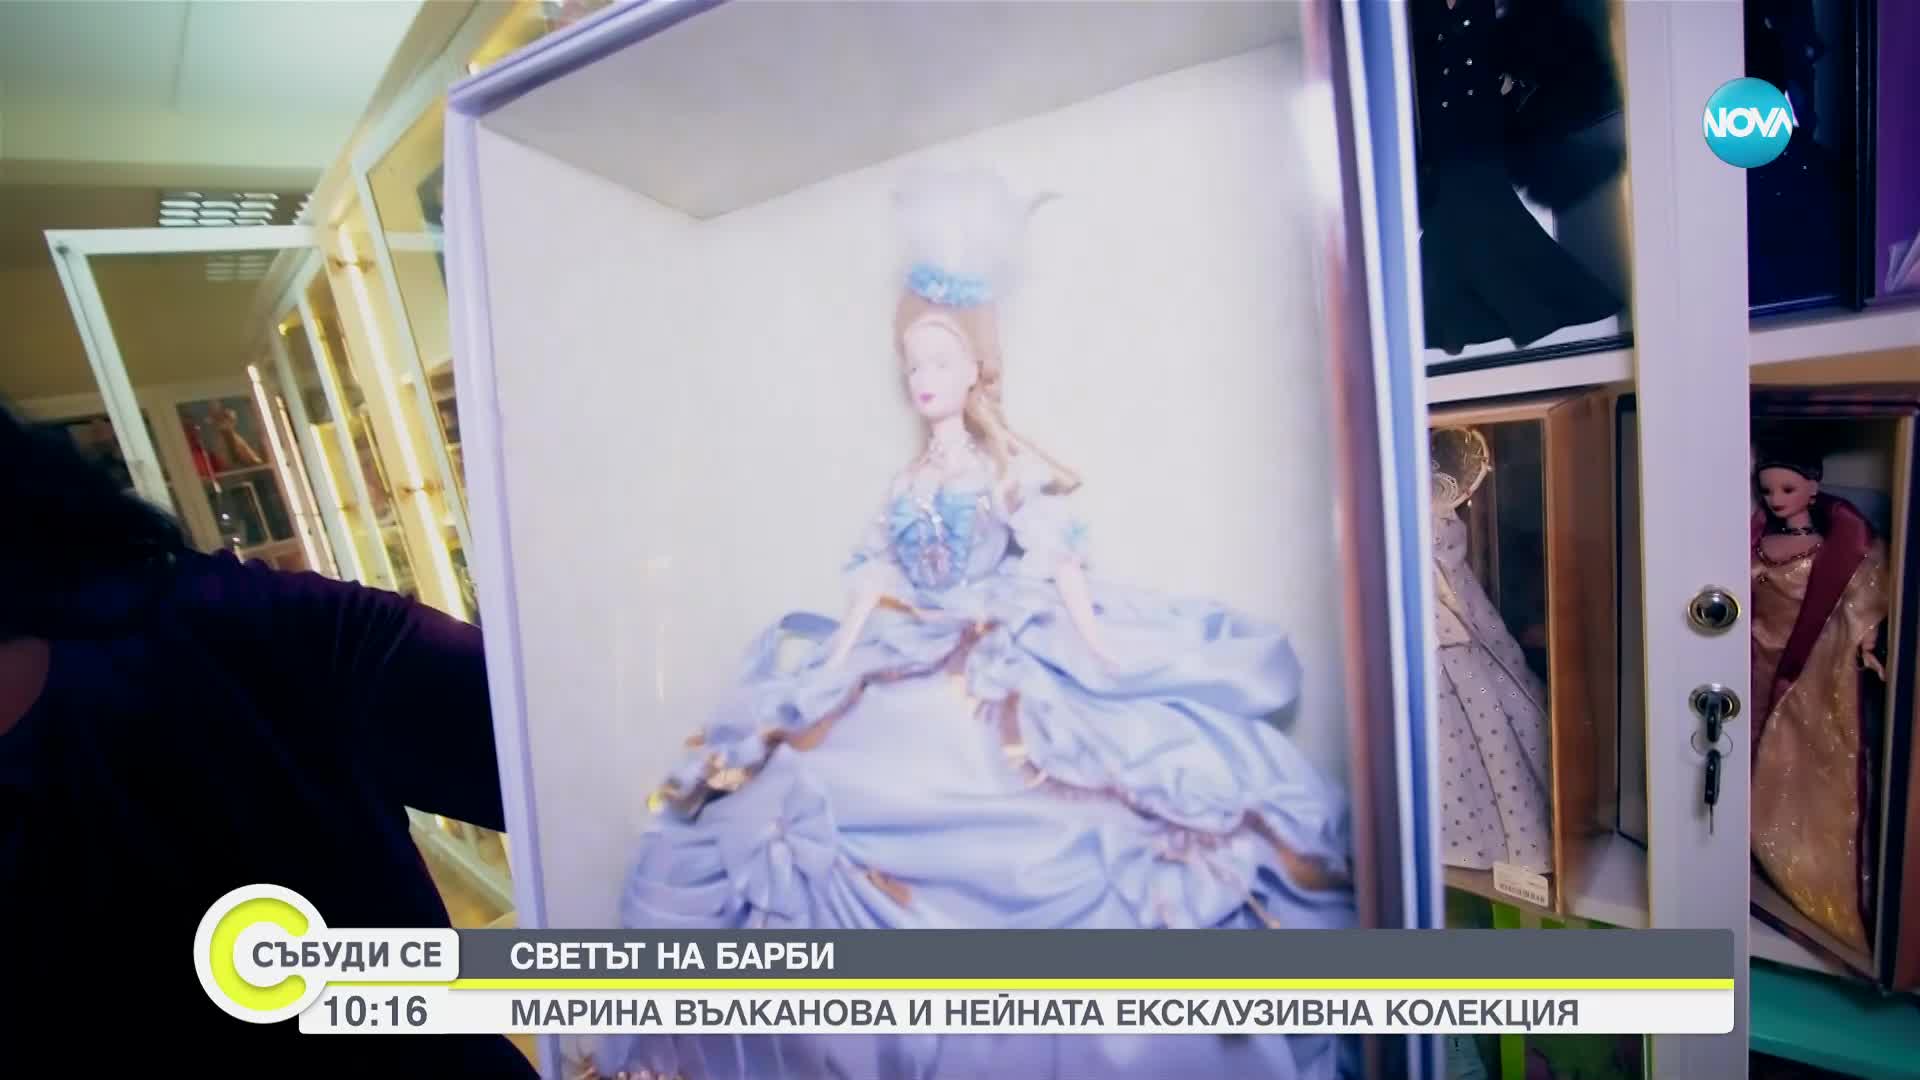 В царството на Барби: Марина Вълканова с най-голямата колекция кукли в Източна Европа